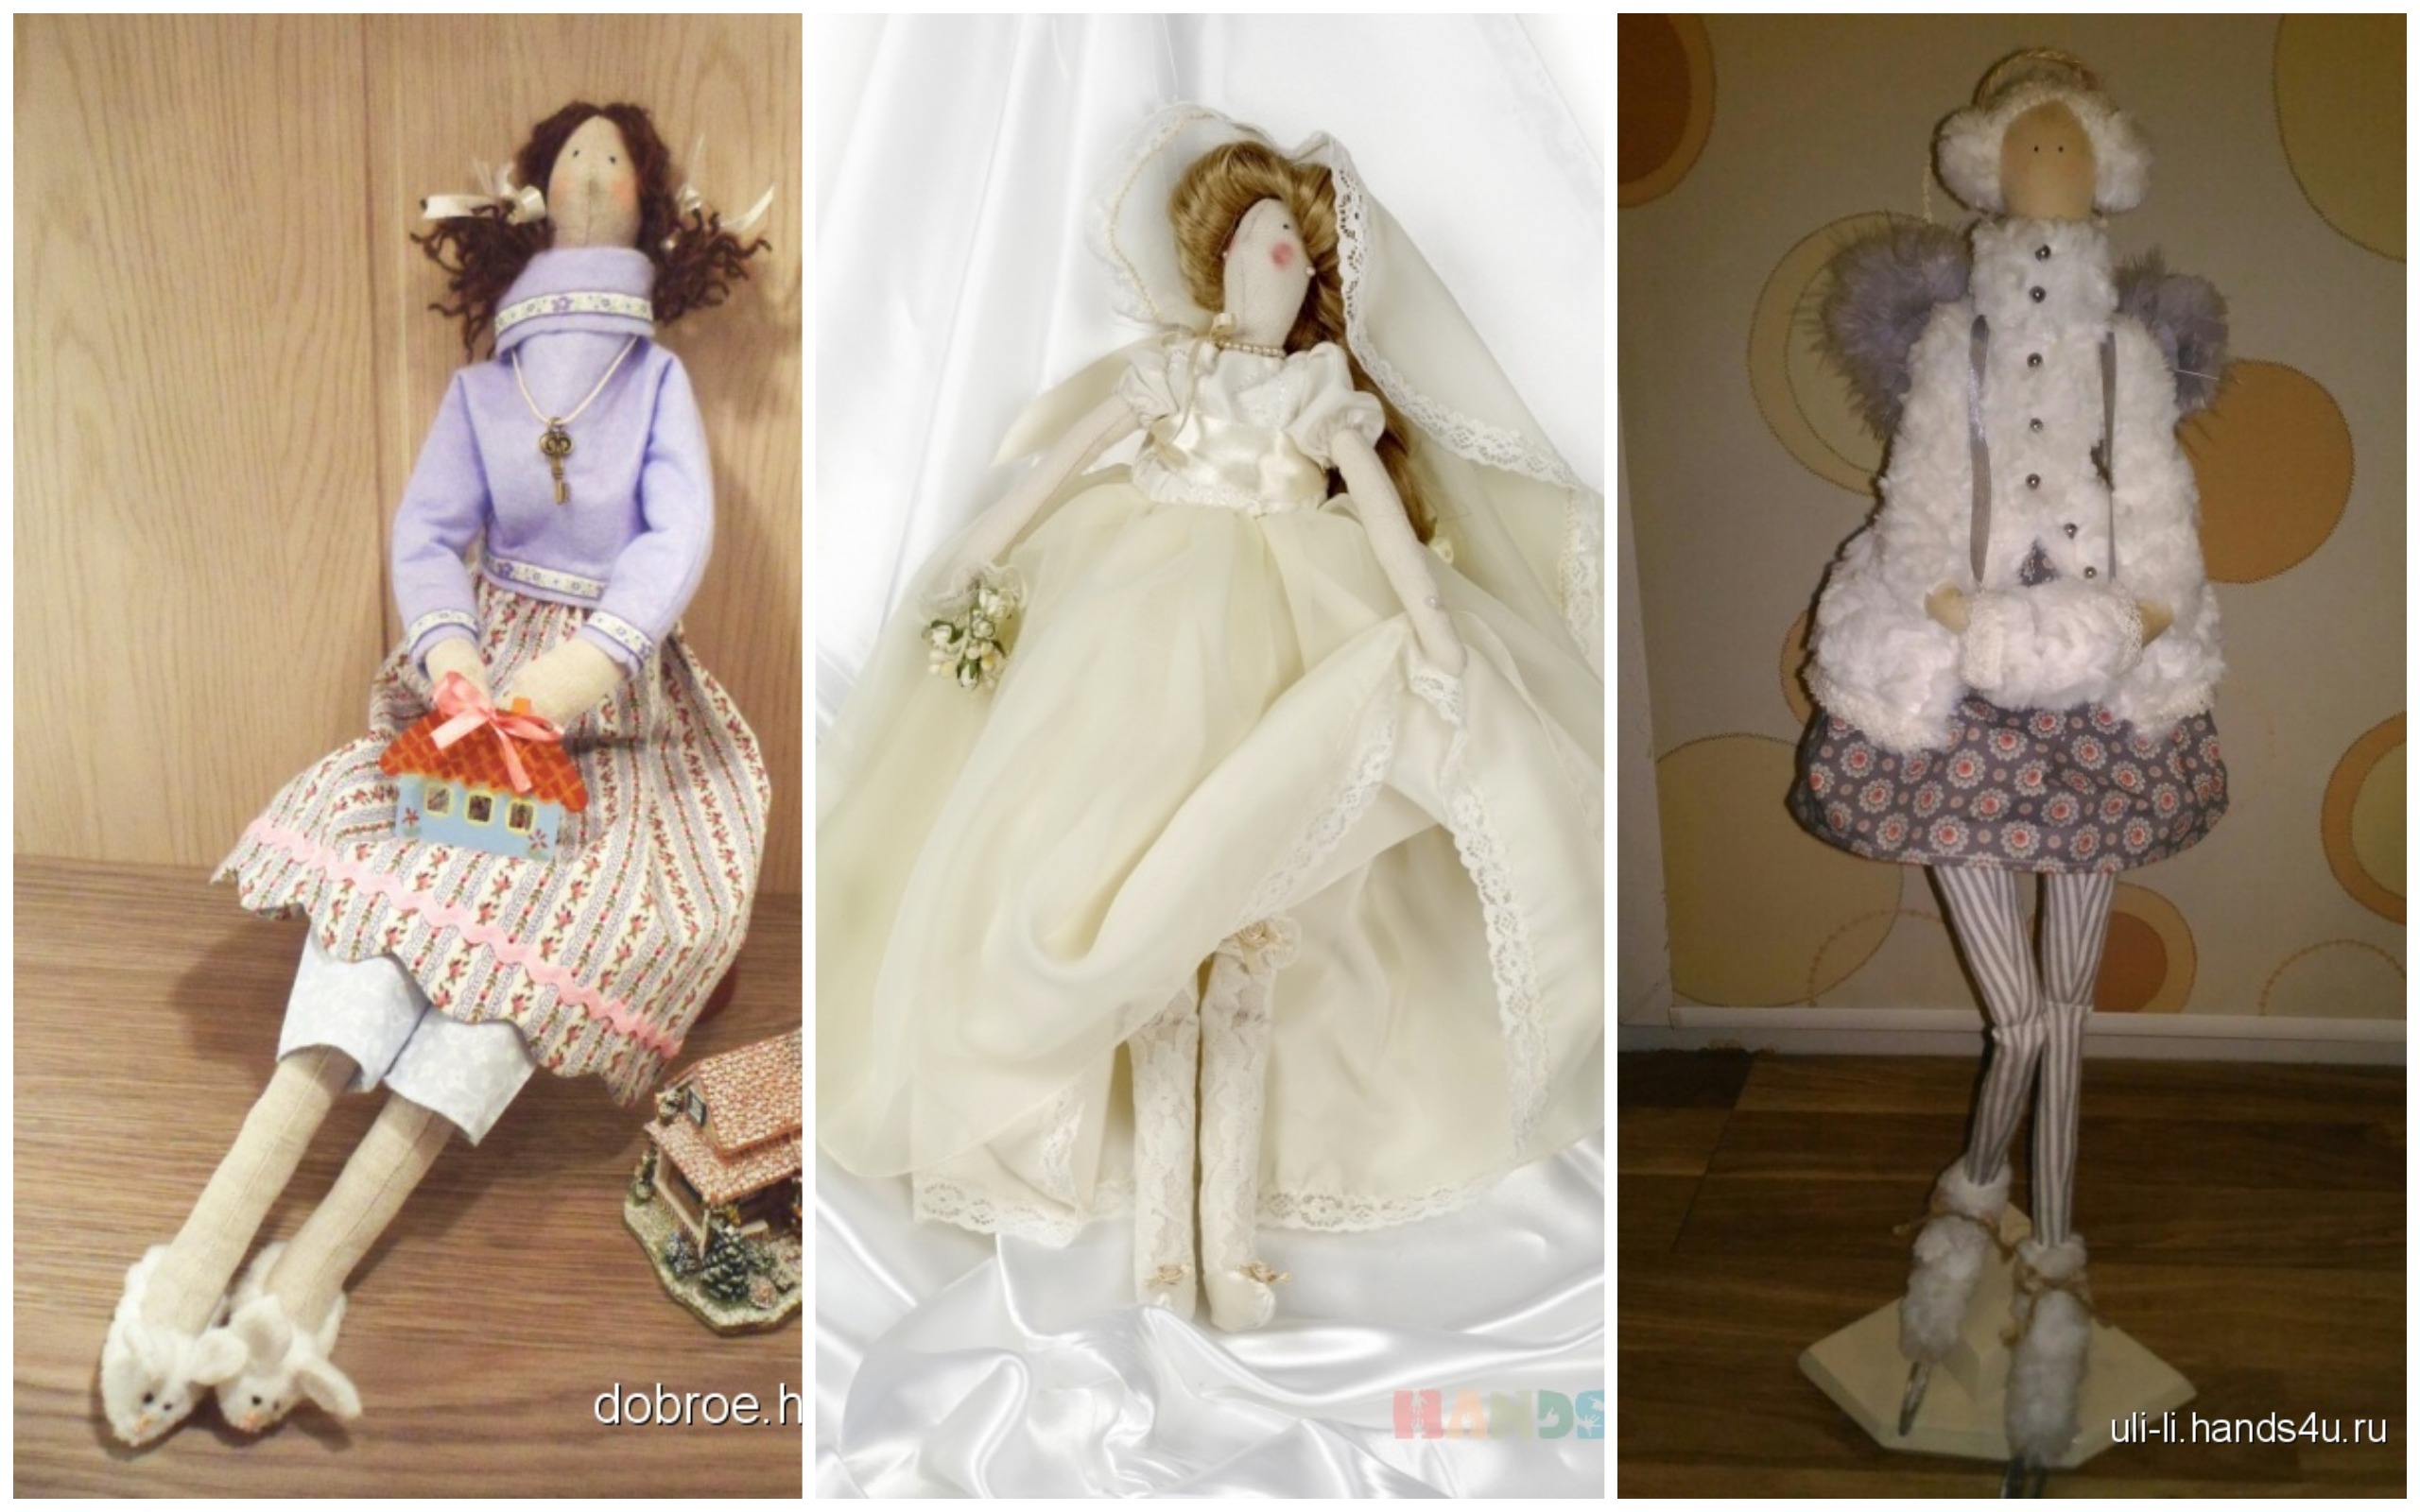 Tilda - купить все для шитья кукол Тильда, ткани и аксессуары в Киеве от Артлавка.